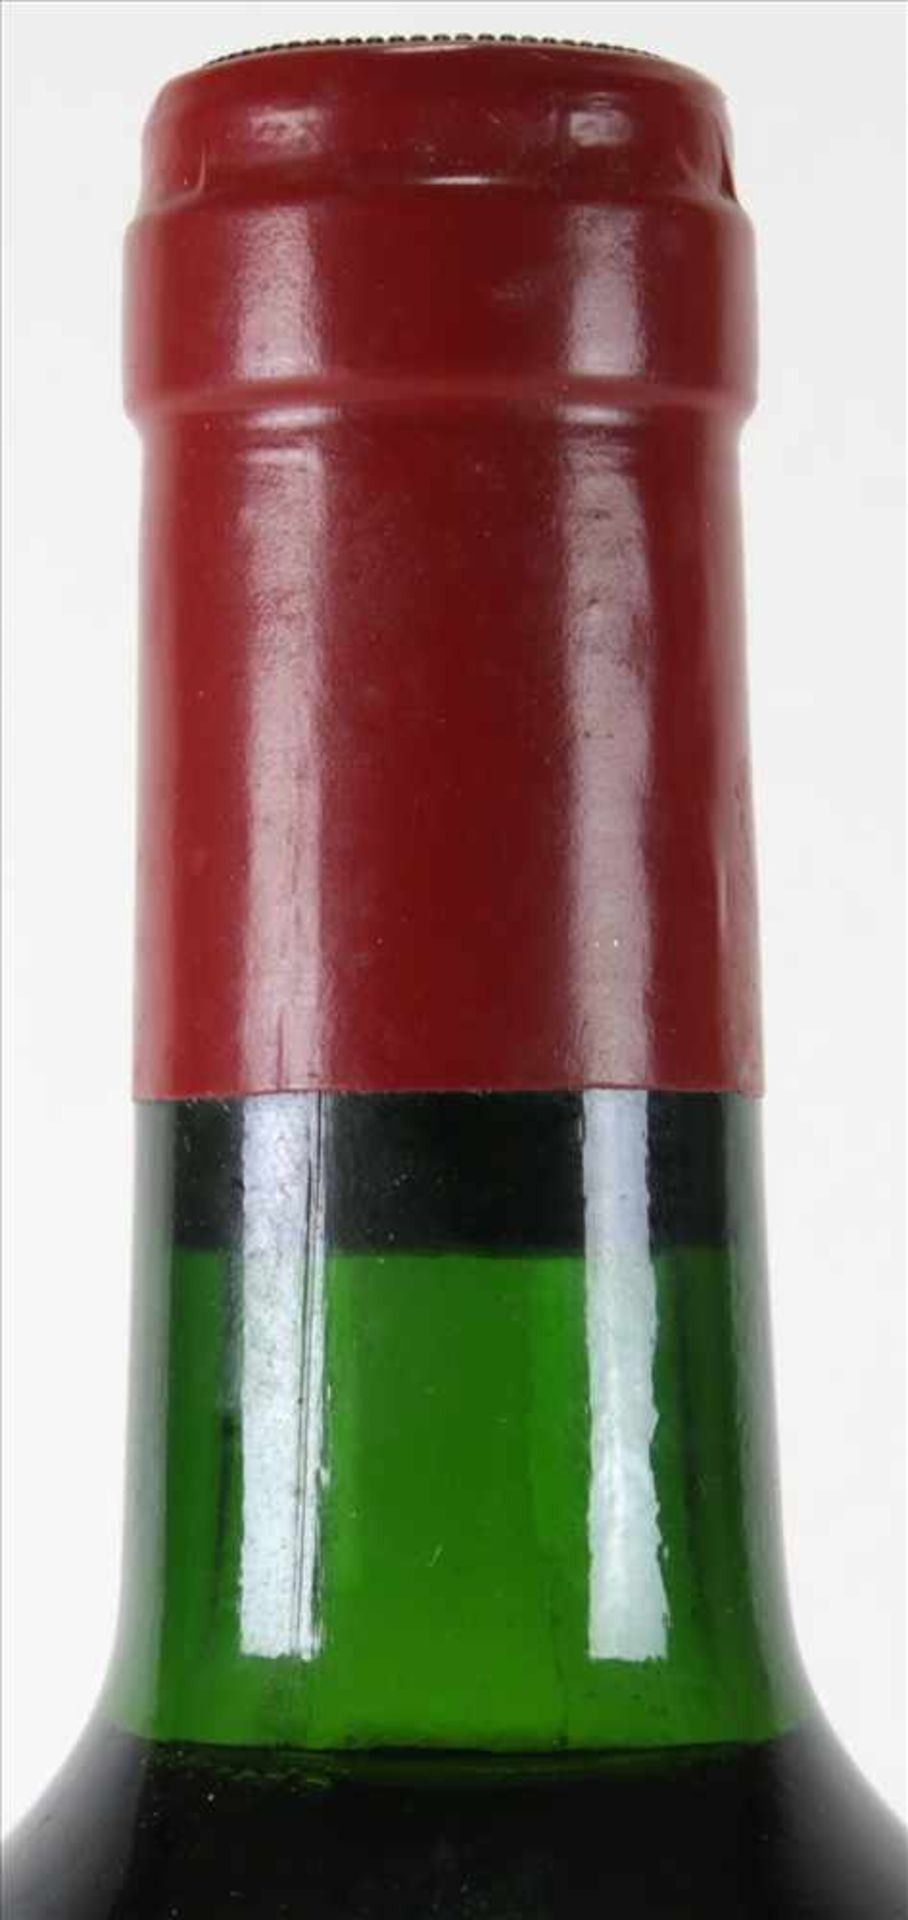 Chateau Figeac 19880,75 Liter Flasche. Füllstand Anfang Hals wie abgebildet. Süddeutsche - Bild 2 aus 3